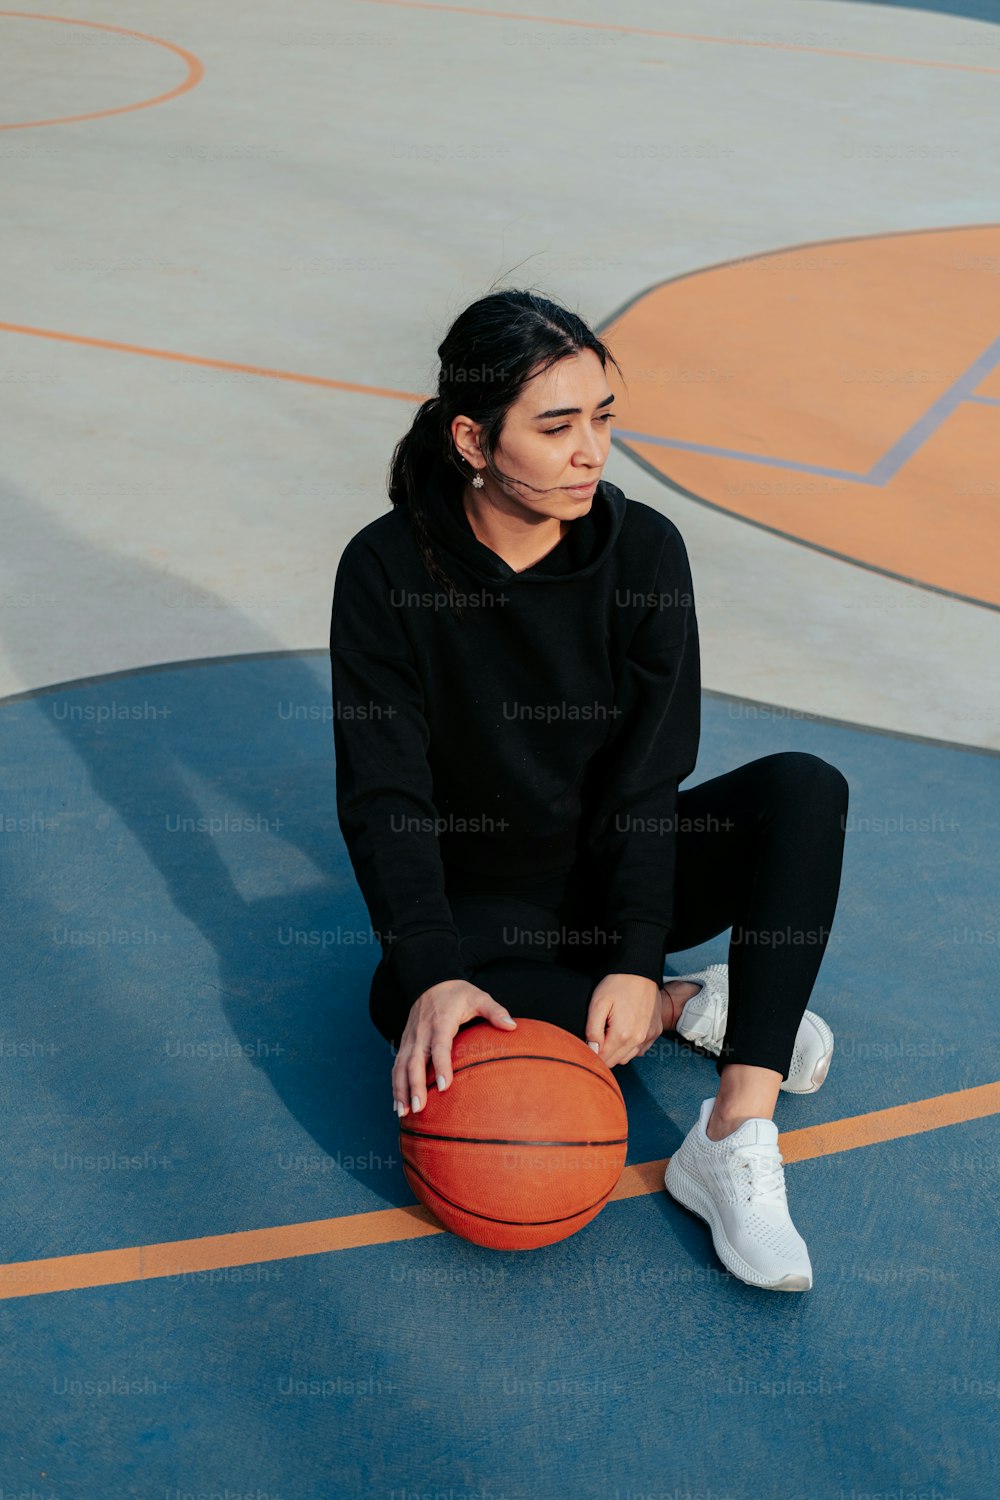 농구공을 들고 농구 코트에 앉아 있는 여자